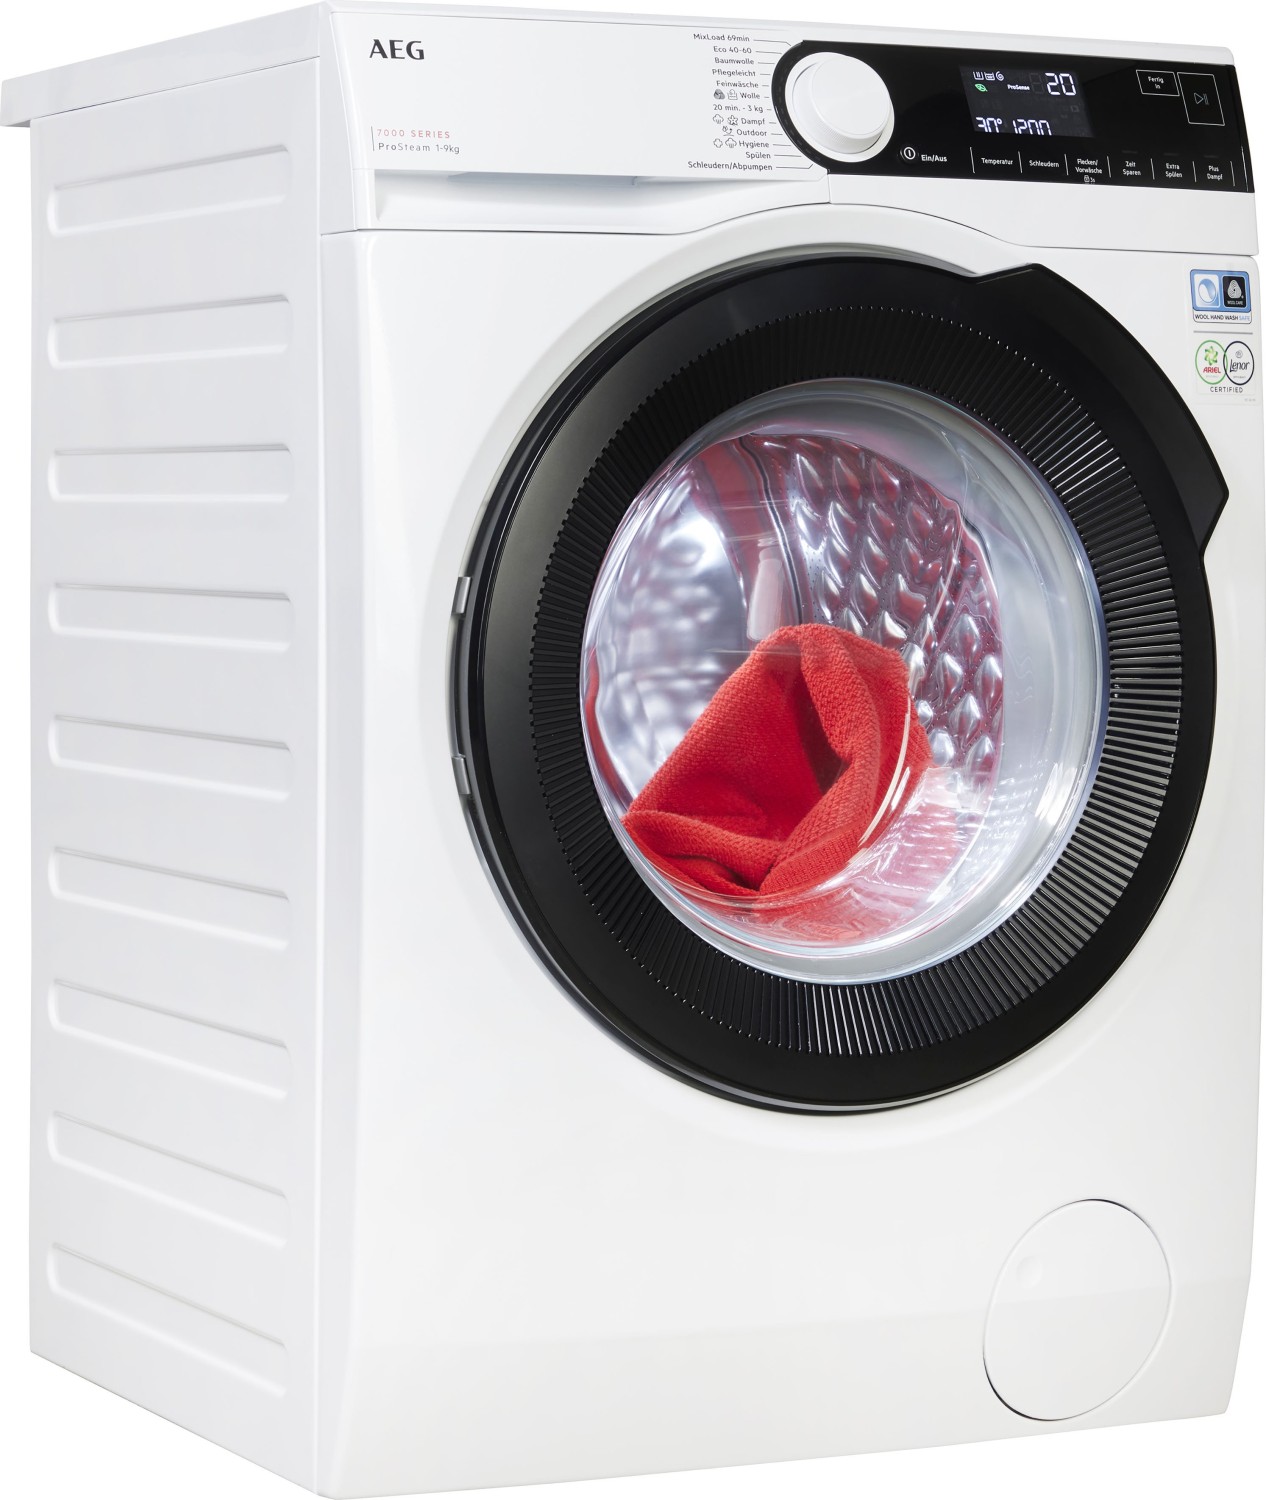 AEG - Waschmaschine - LR7A70690 online kaufen